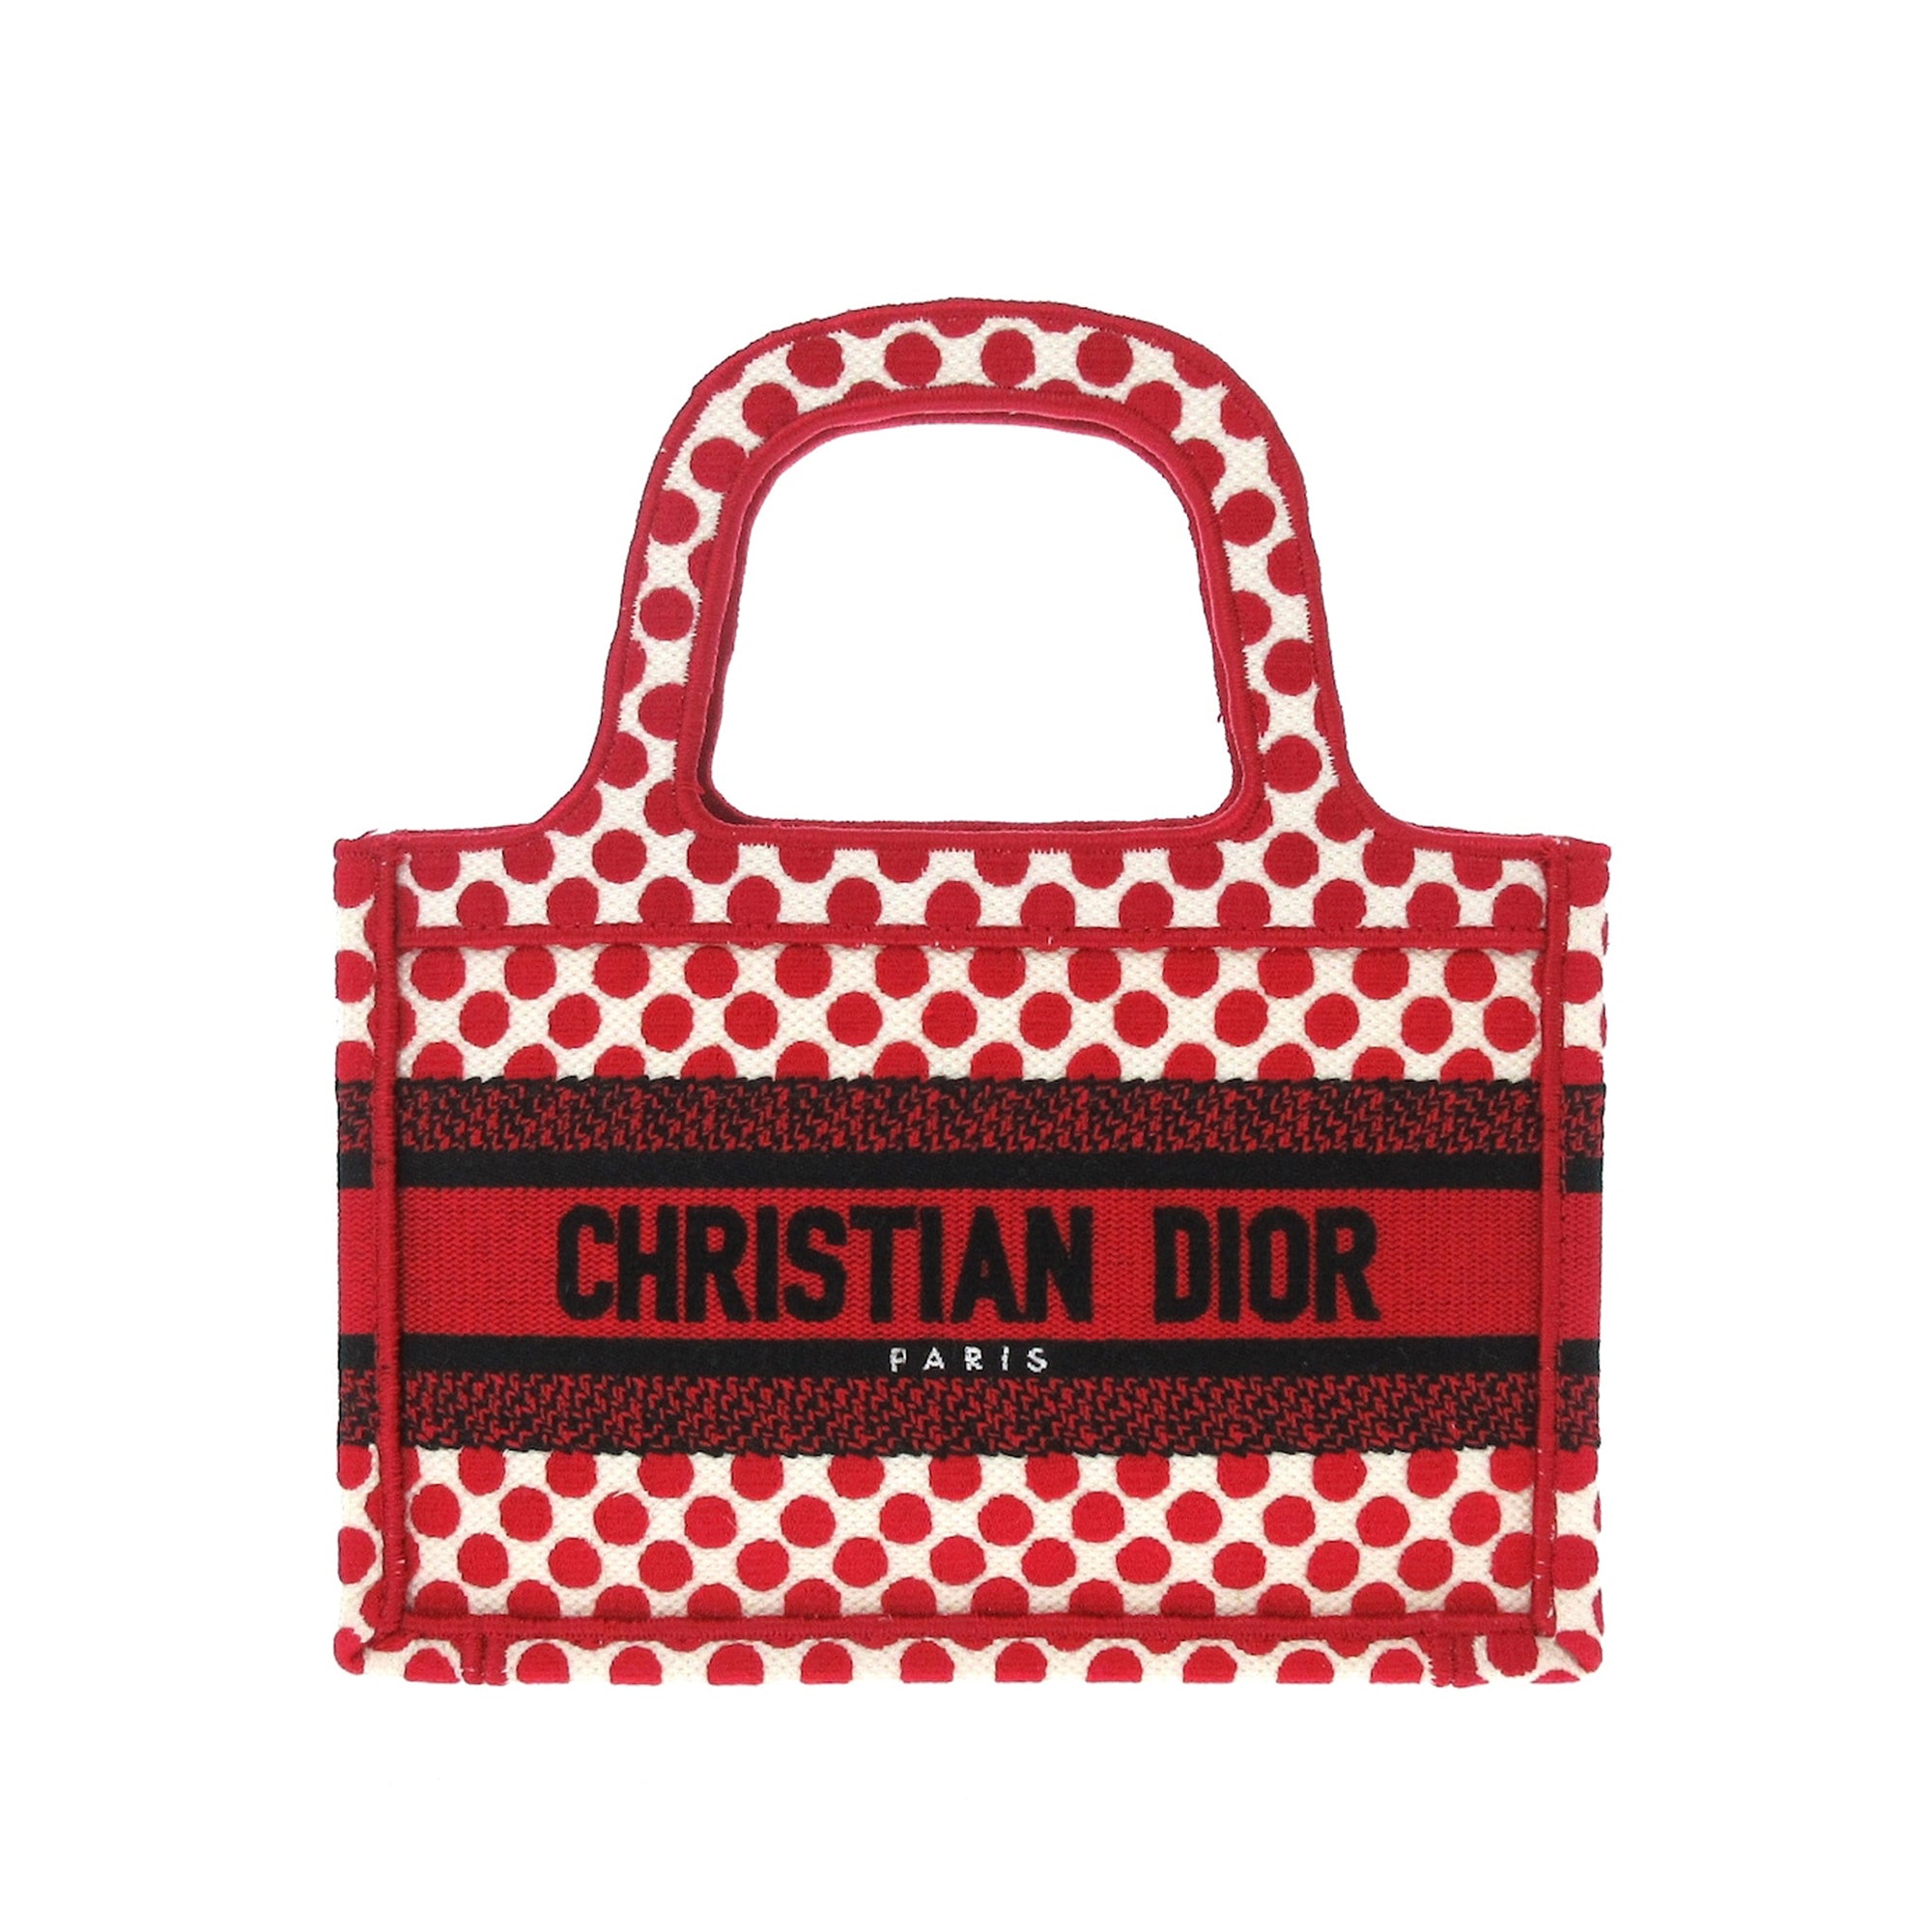 Preloved Christian Dior Book Tote Small